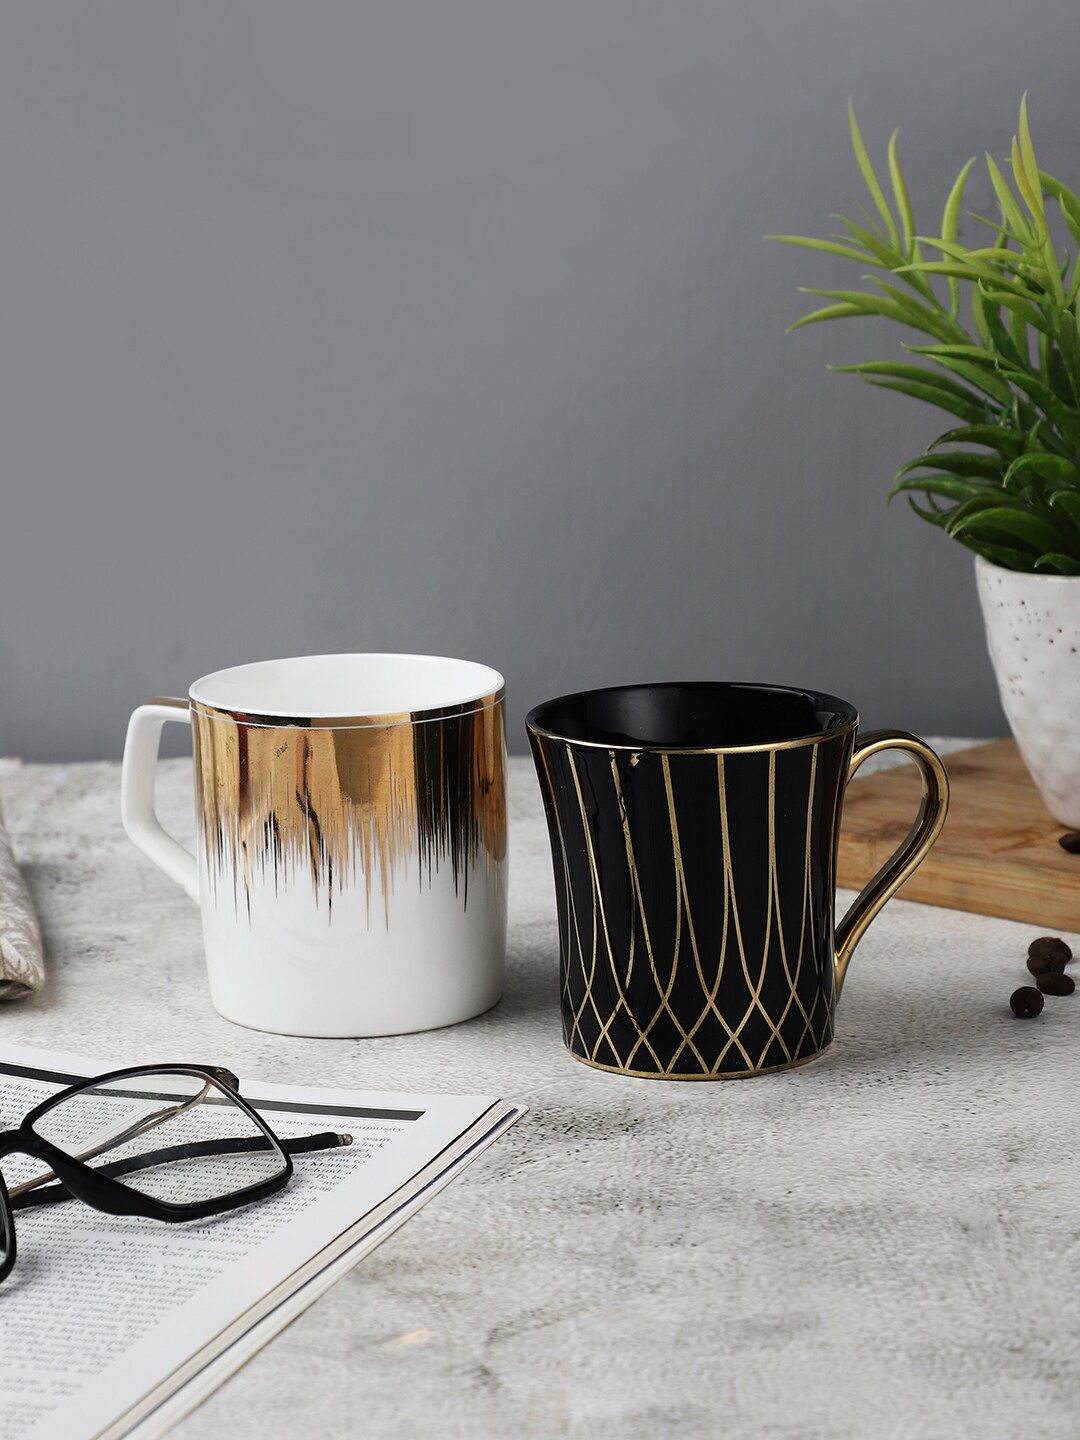 OddCroft Black & White Set of 2 Ceramic Tea Cups Price in India